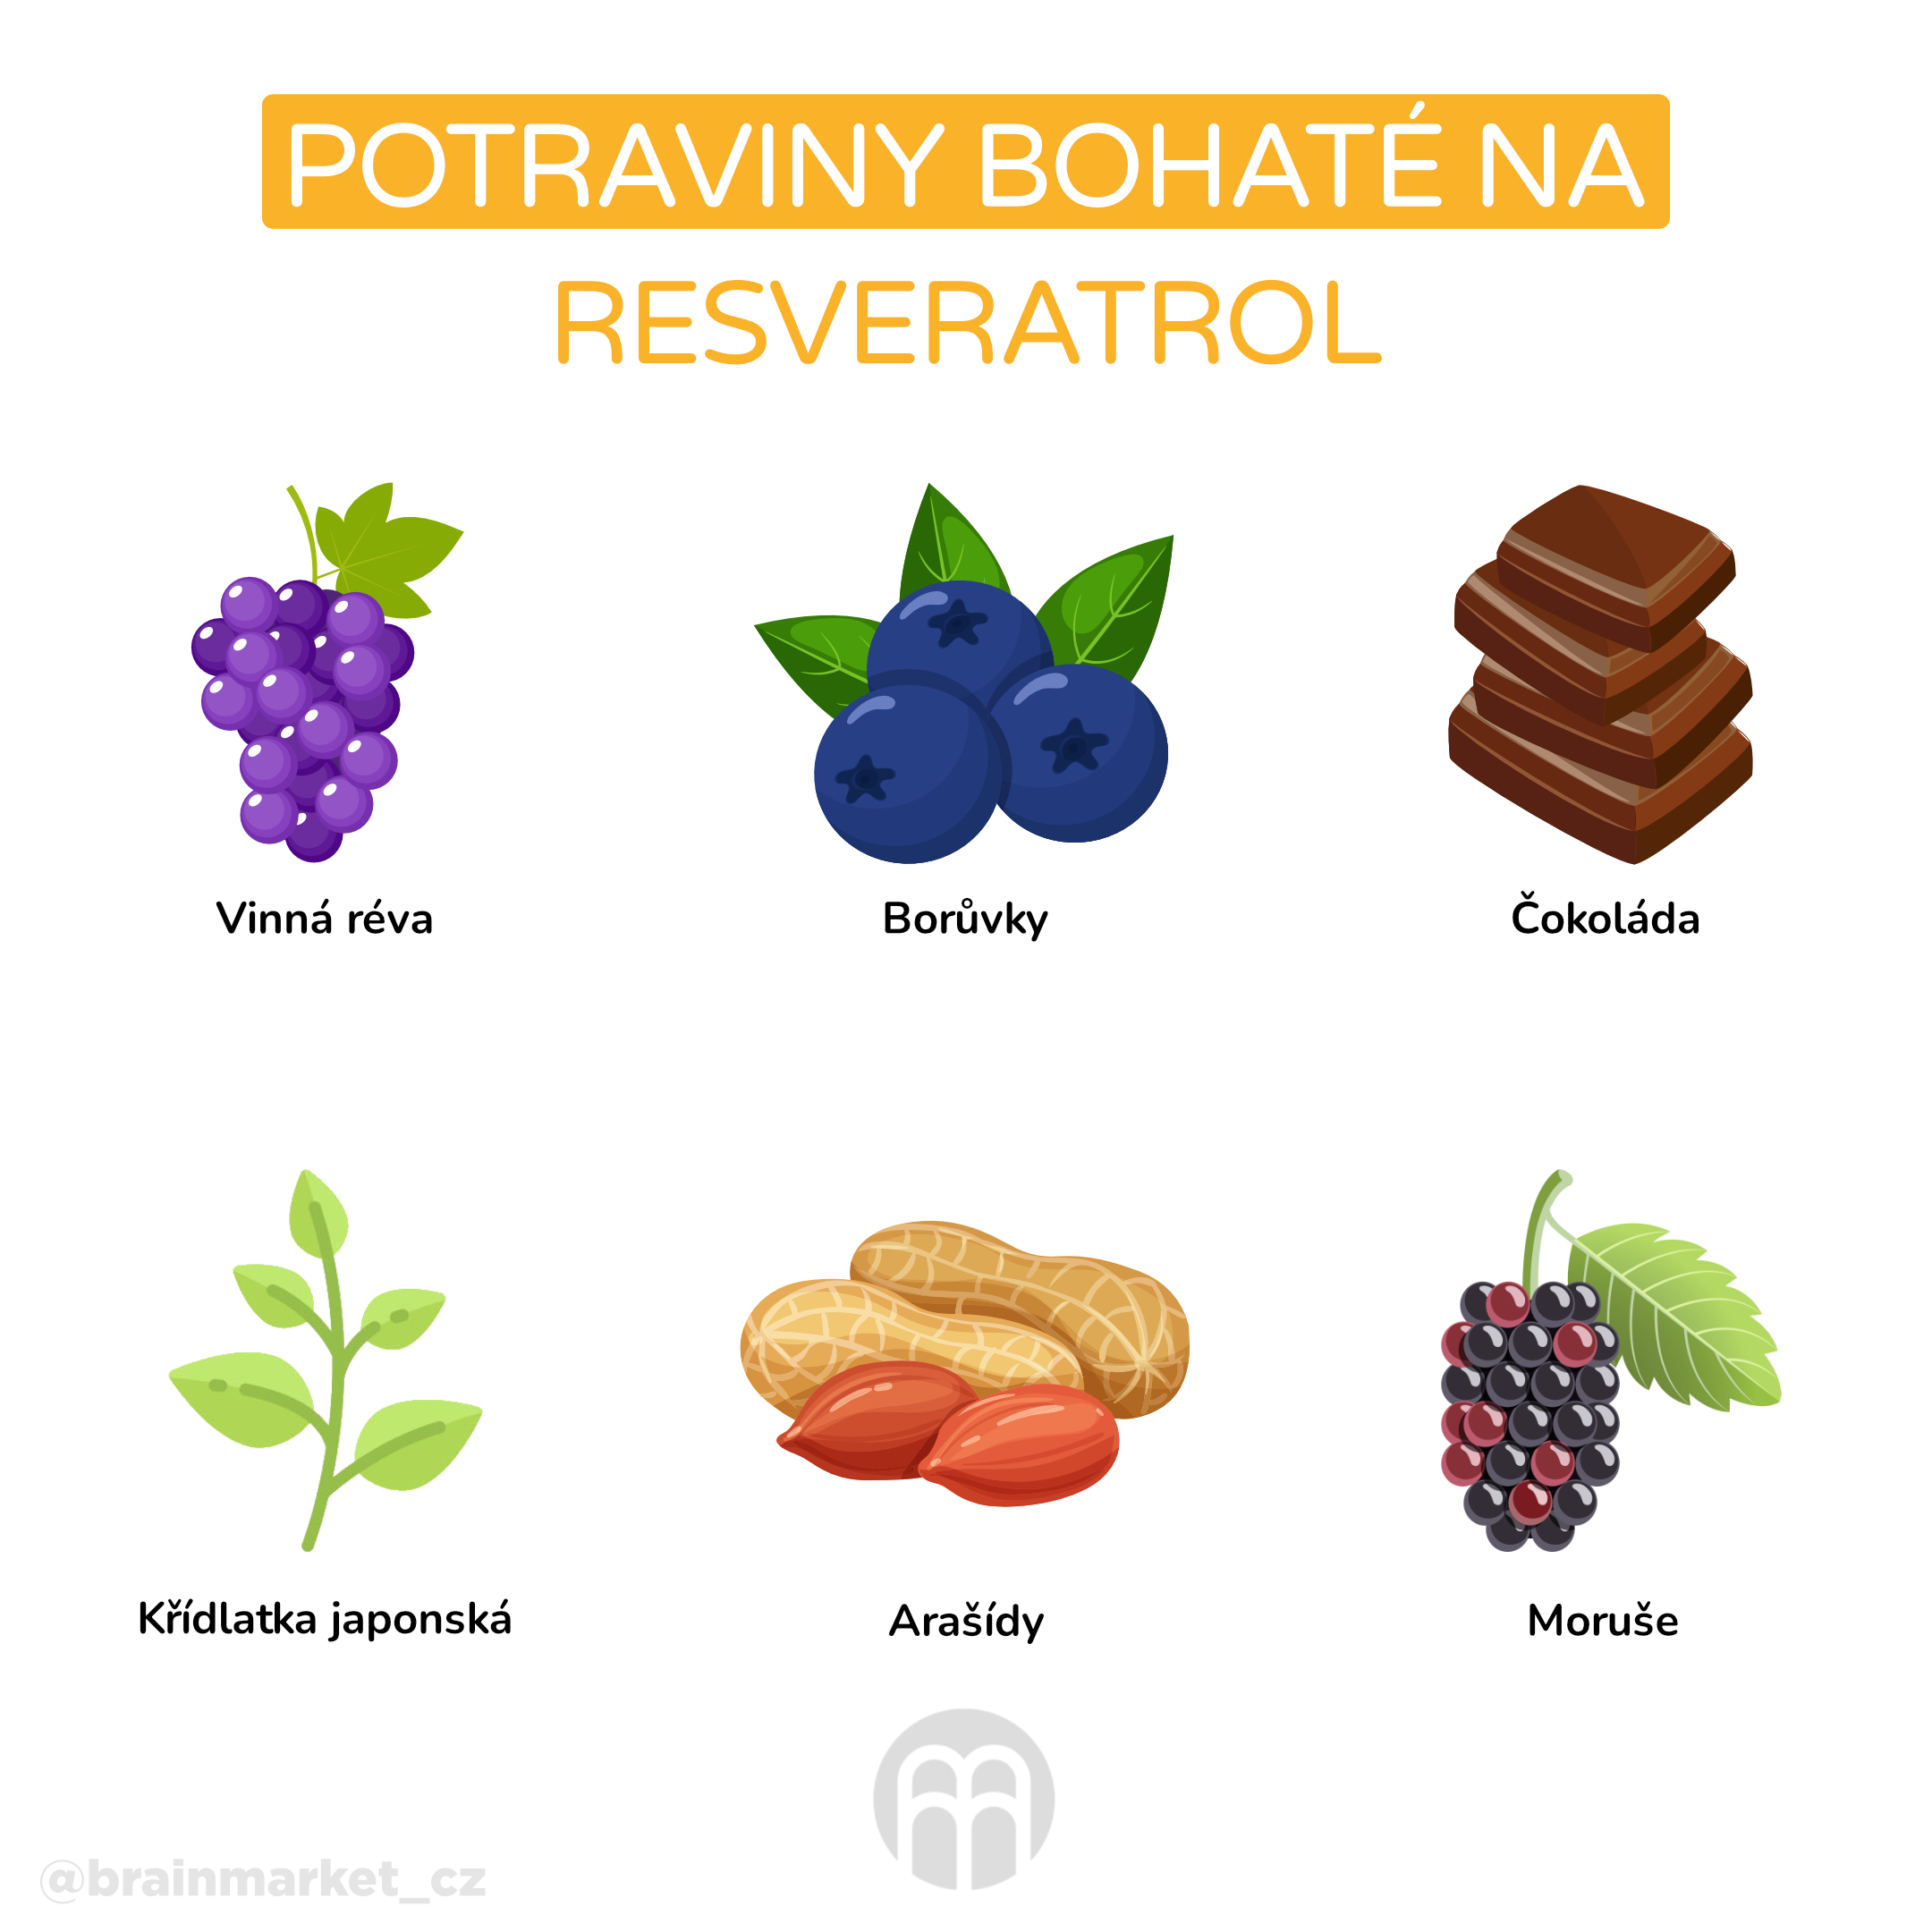 Potraviny bohaté na resveratrol_infografika_cz